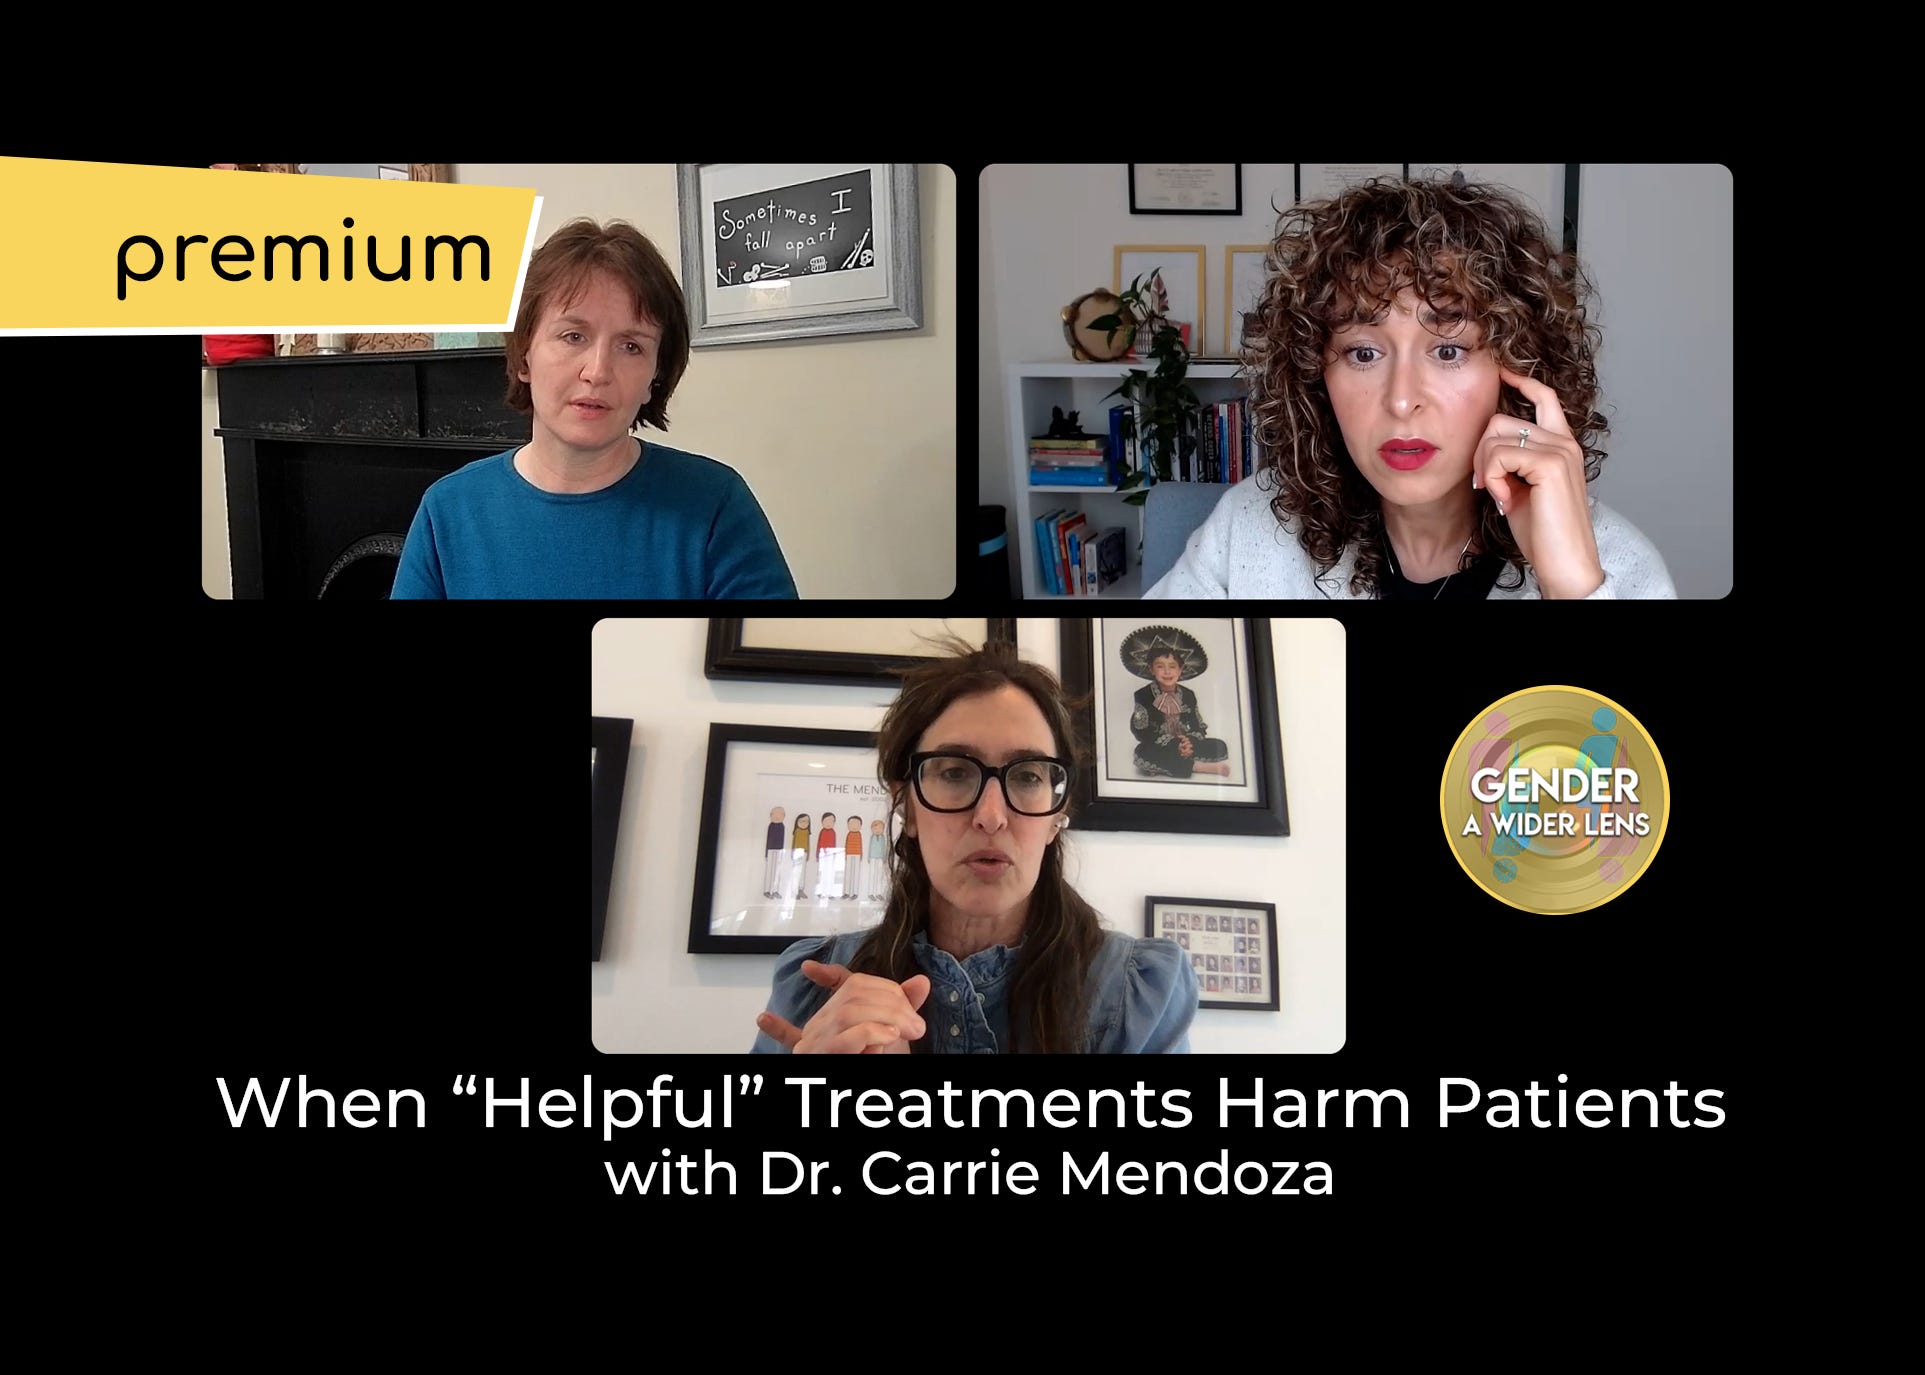 Premium: When ”Helpful” Treatments Harm Patients